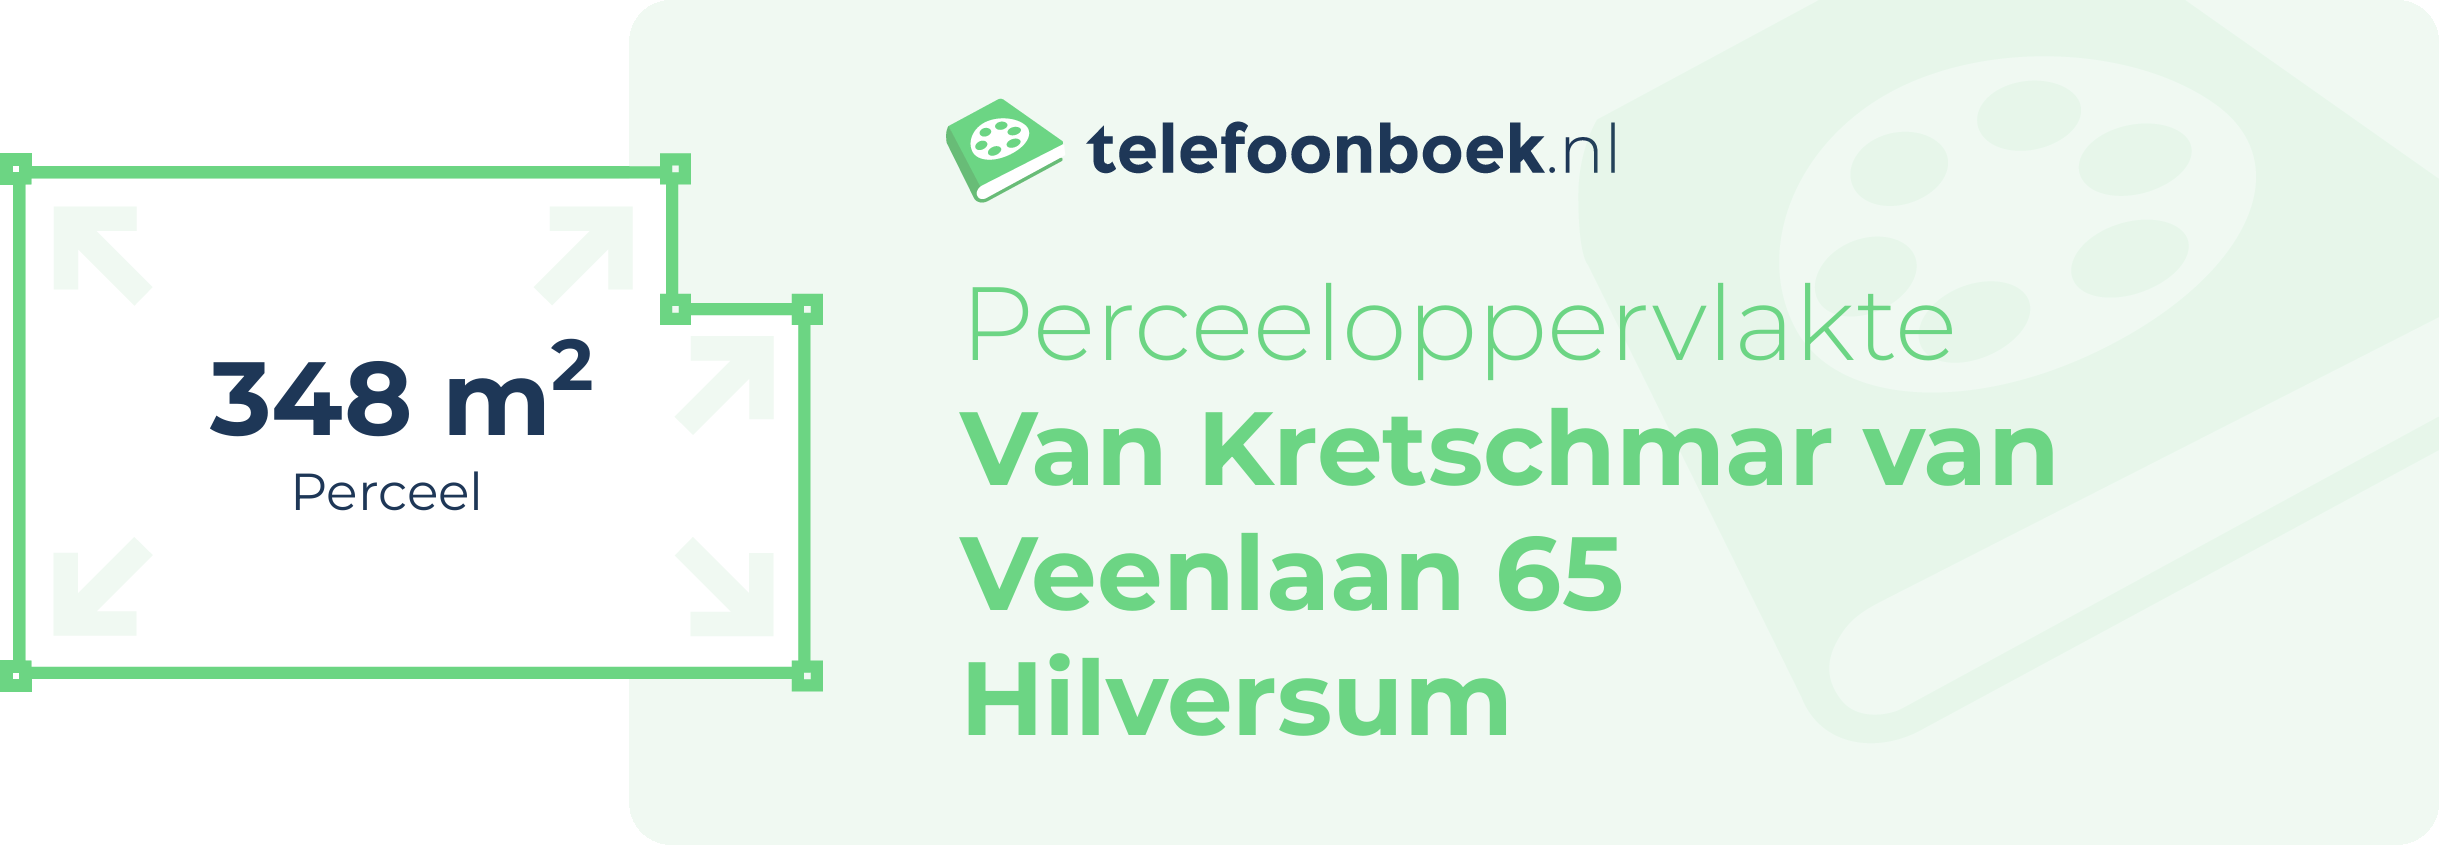 Perceeloppervlakte Van Kretschmar Van Veenlaan 65 Hilversum